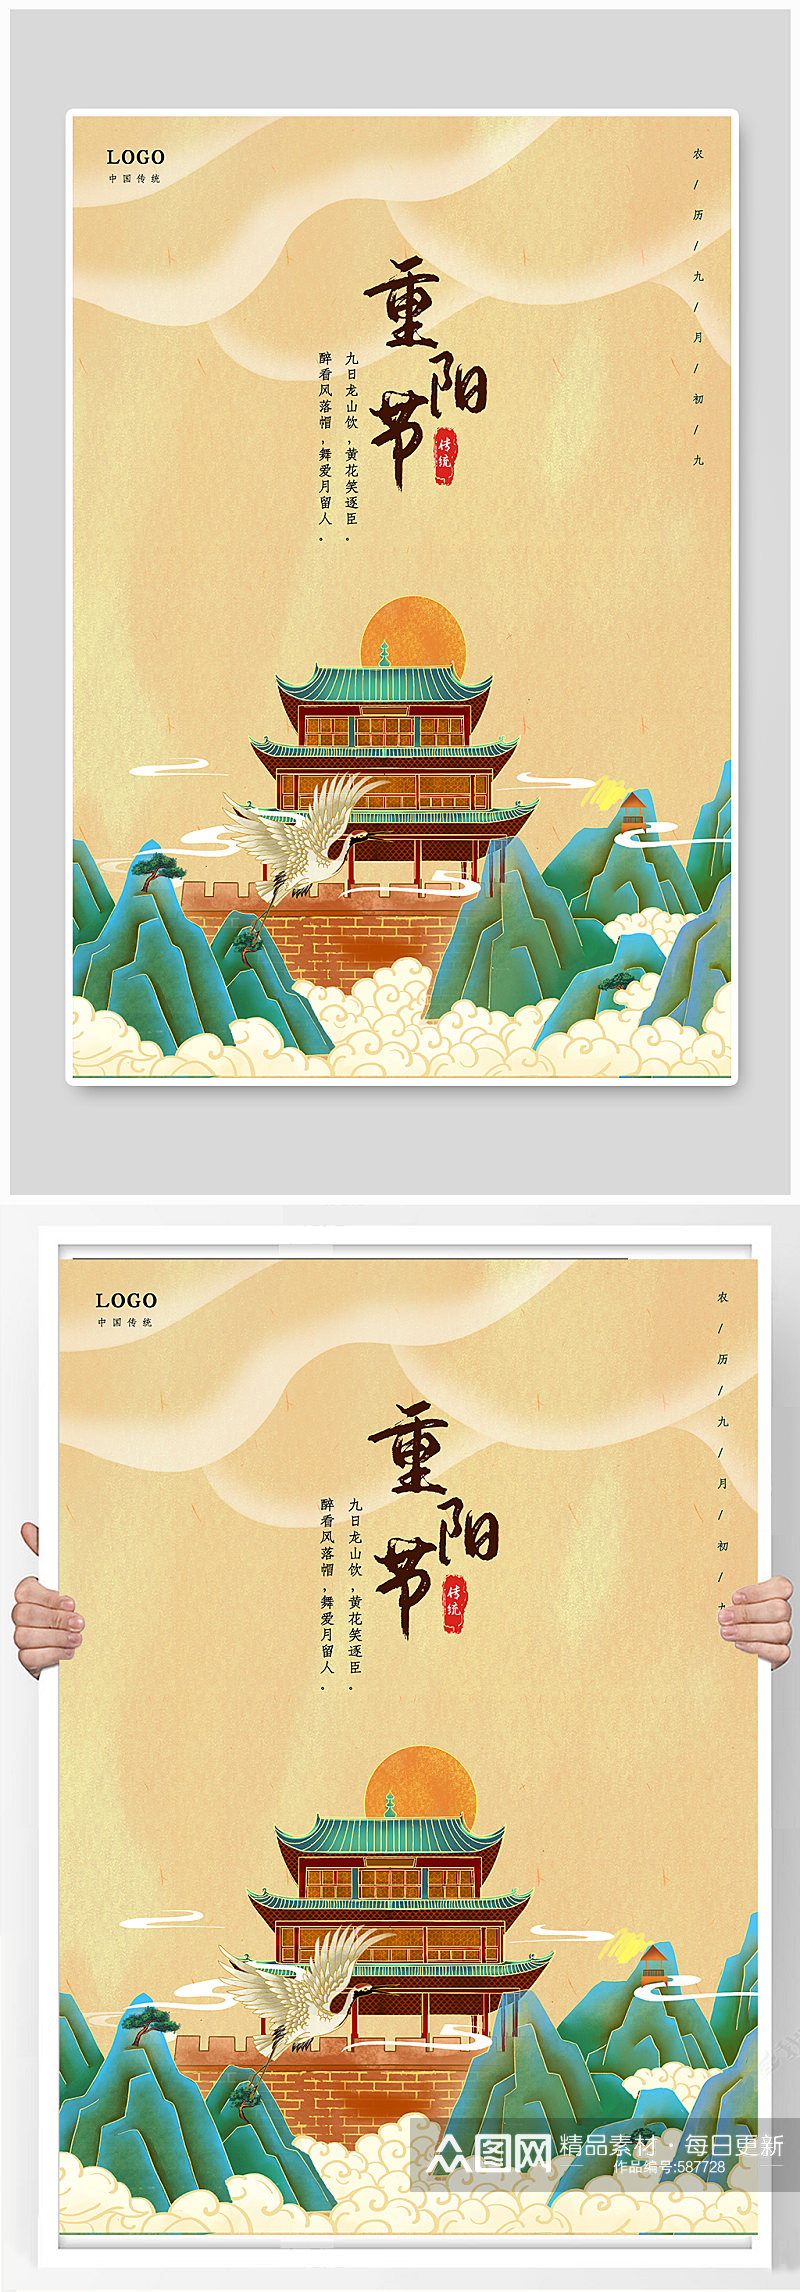 重阳节中国风水墨海报素材